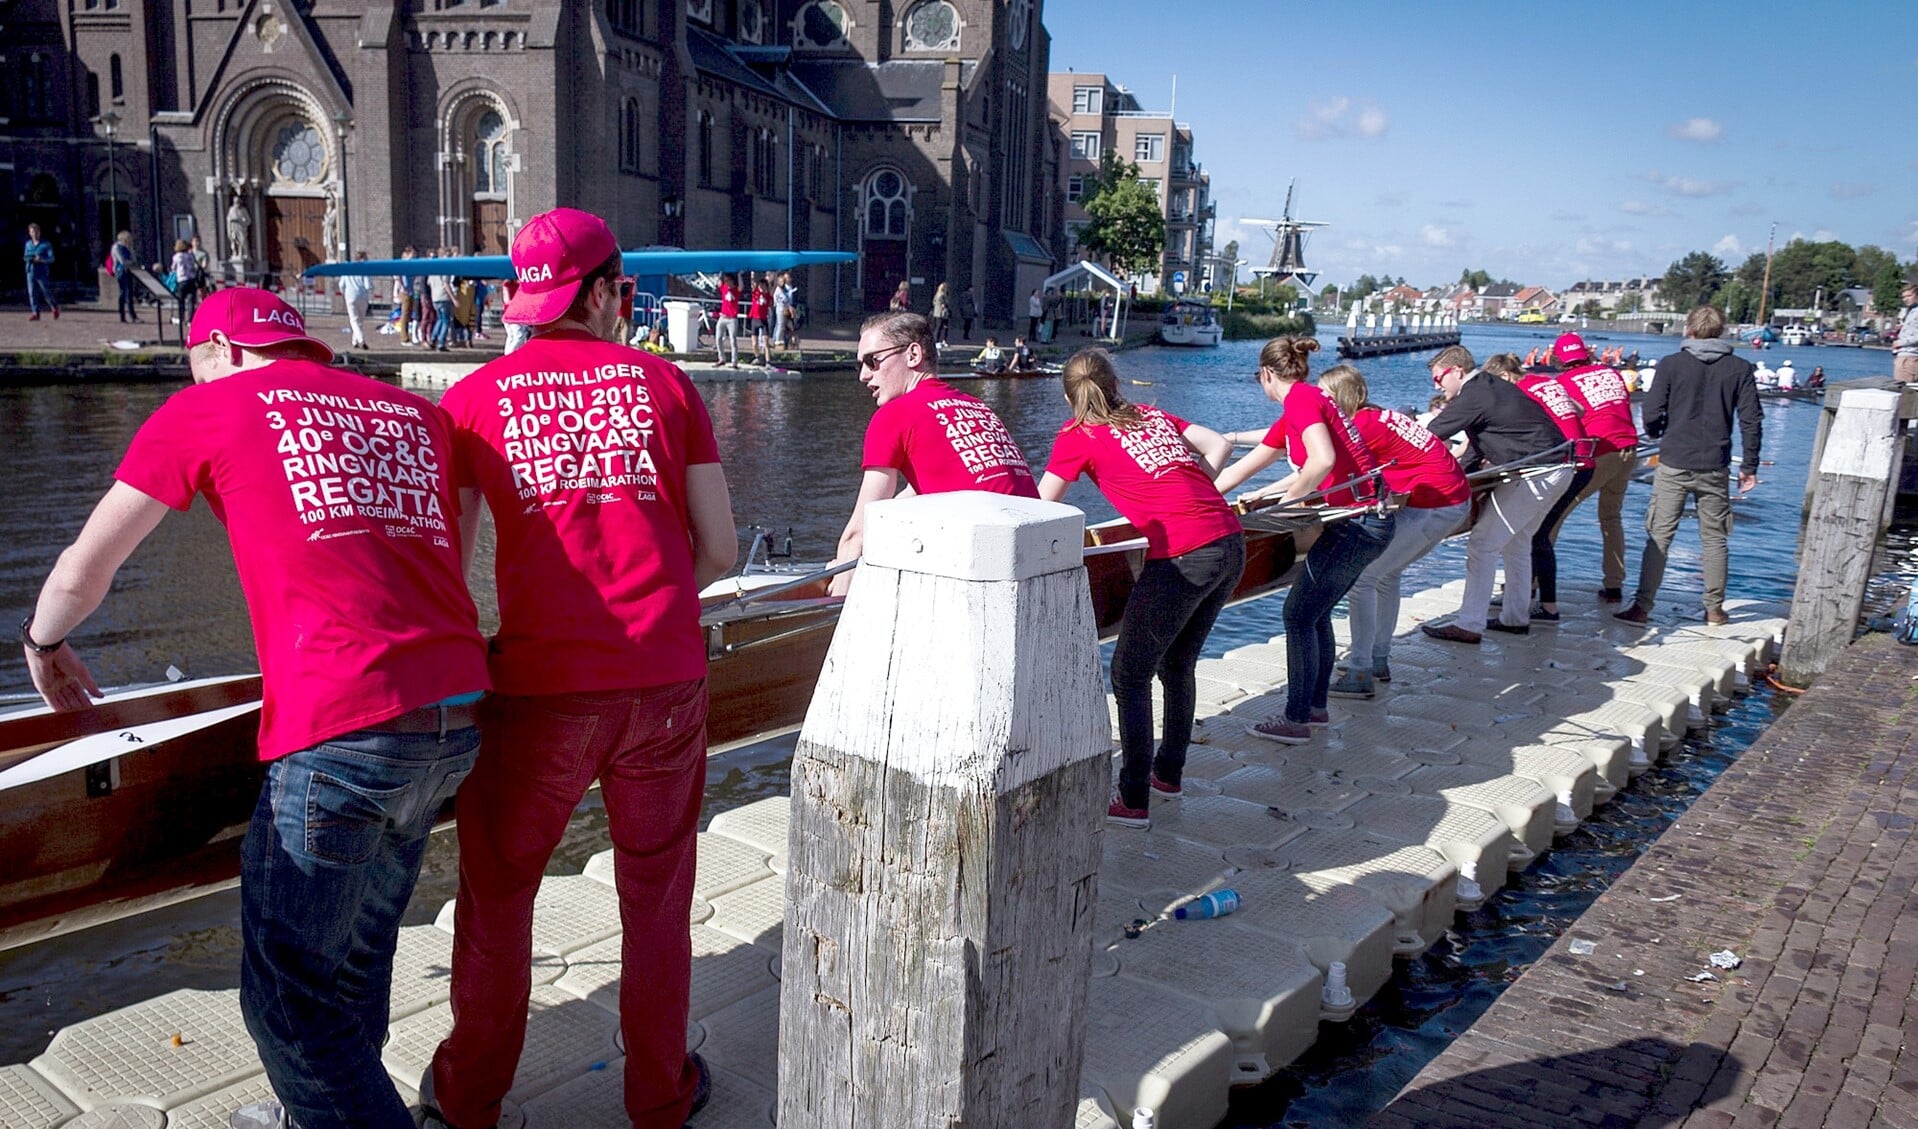 De boten van de deelnemers moeten in Leidschendam langs de sluis getild worden om de wedstrijd te kunnen vervolgen. (Foto: LAGA).